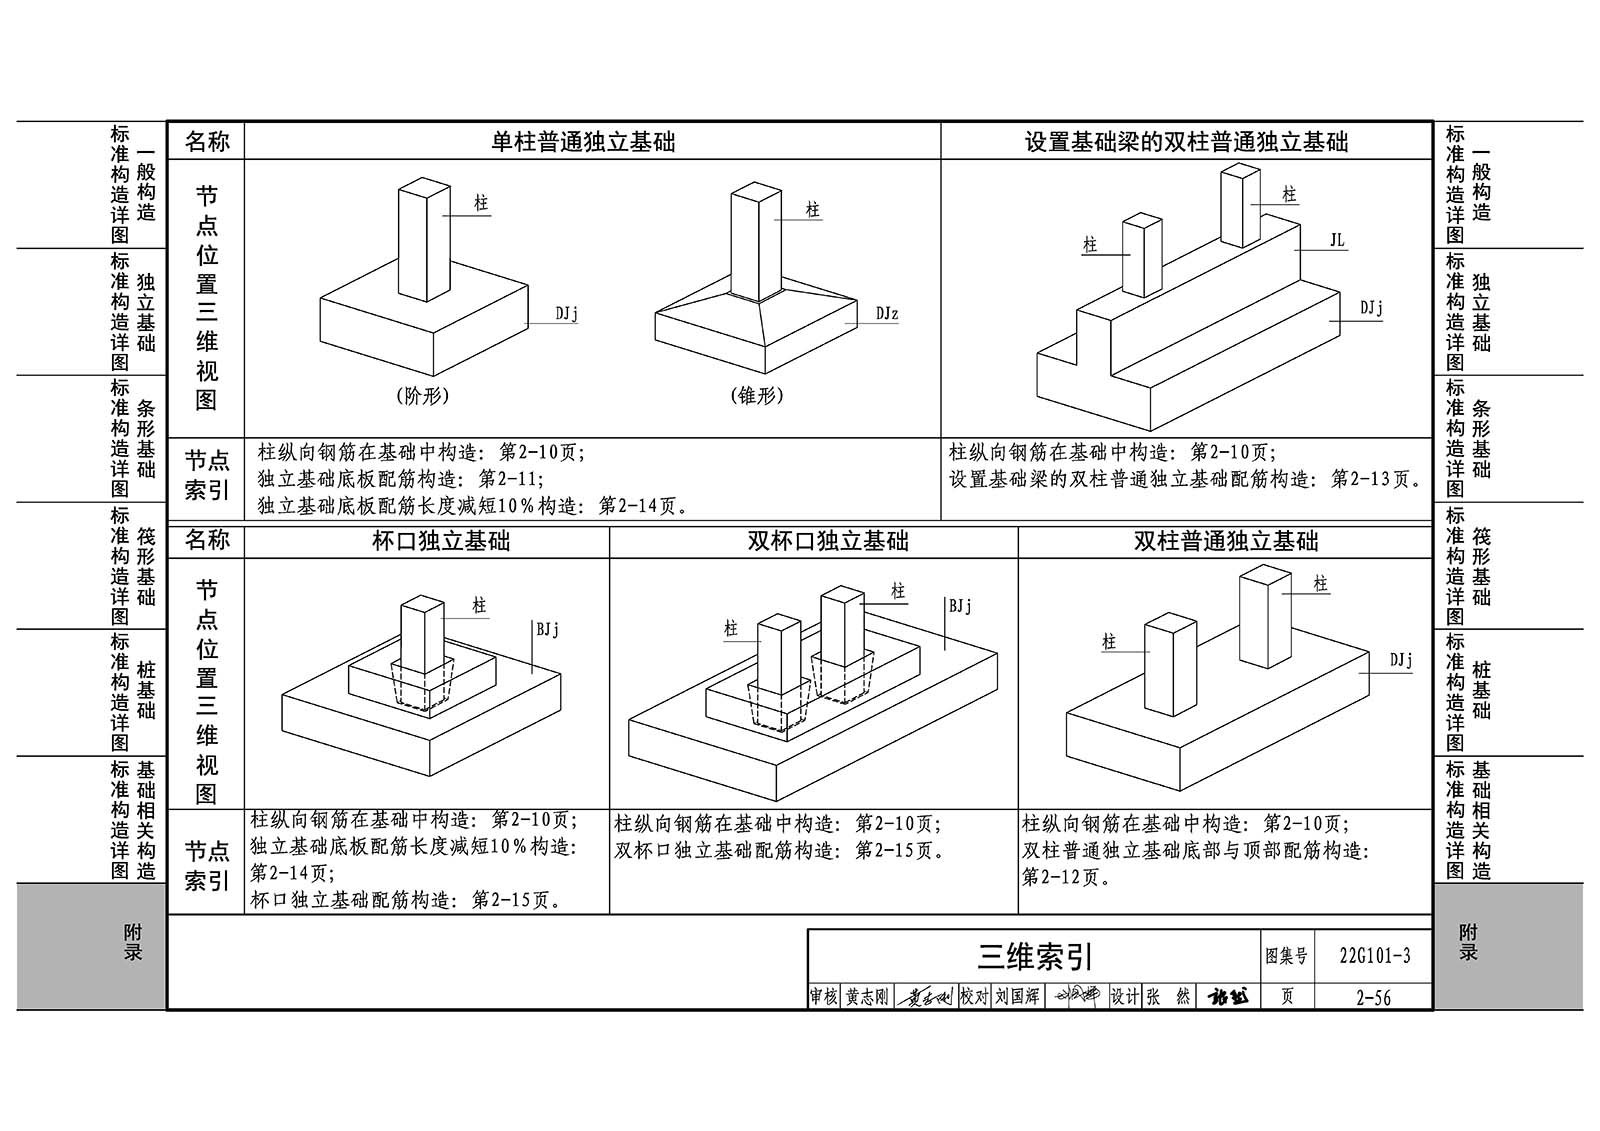 22G101-3：混凝土结构施工图平面整体表示方法制图规则和构造详图（独立基础、条形基础、筏形基础、桩基础）